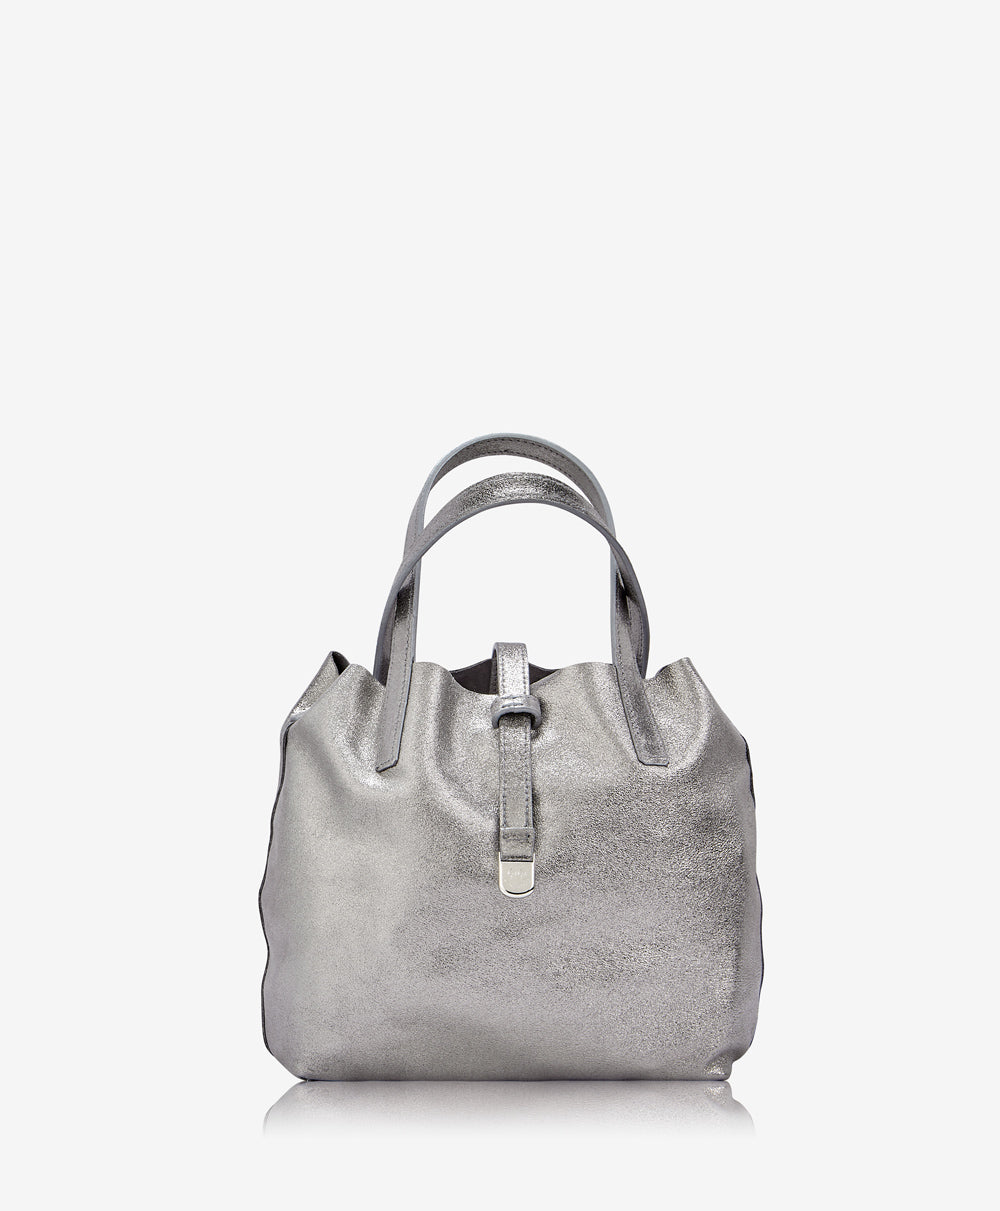 New Square Fashion Simple Clutch Bags PU Mini Handbags TCDBG0132